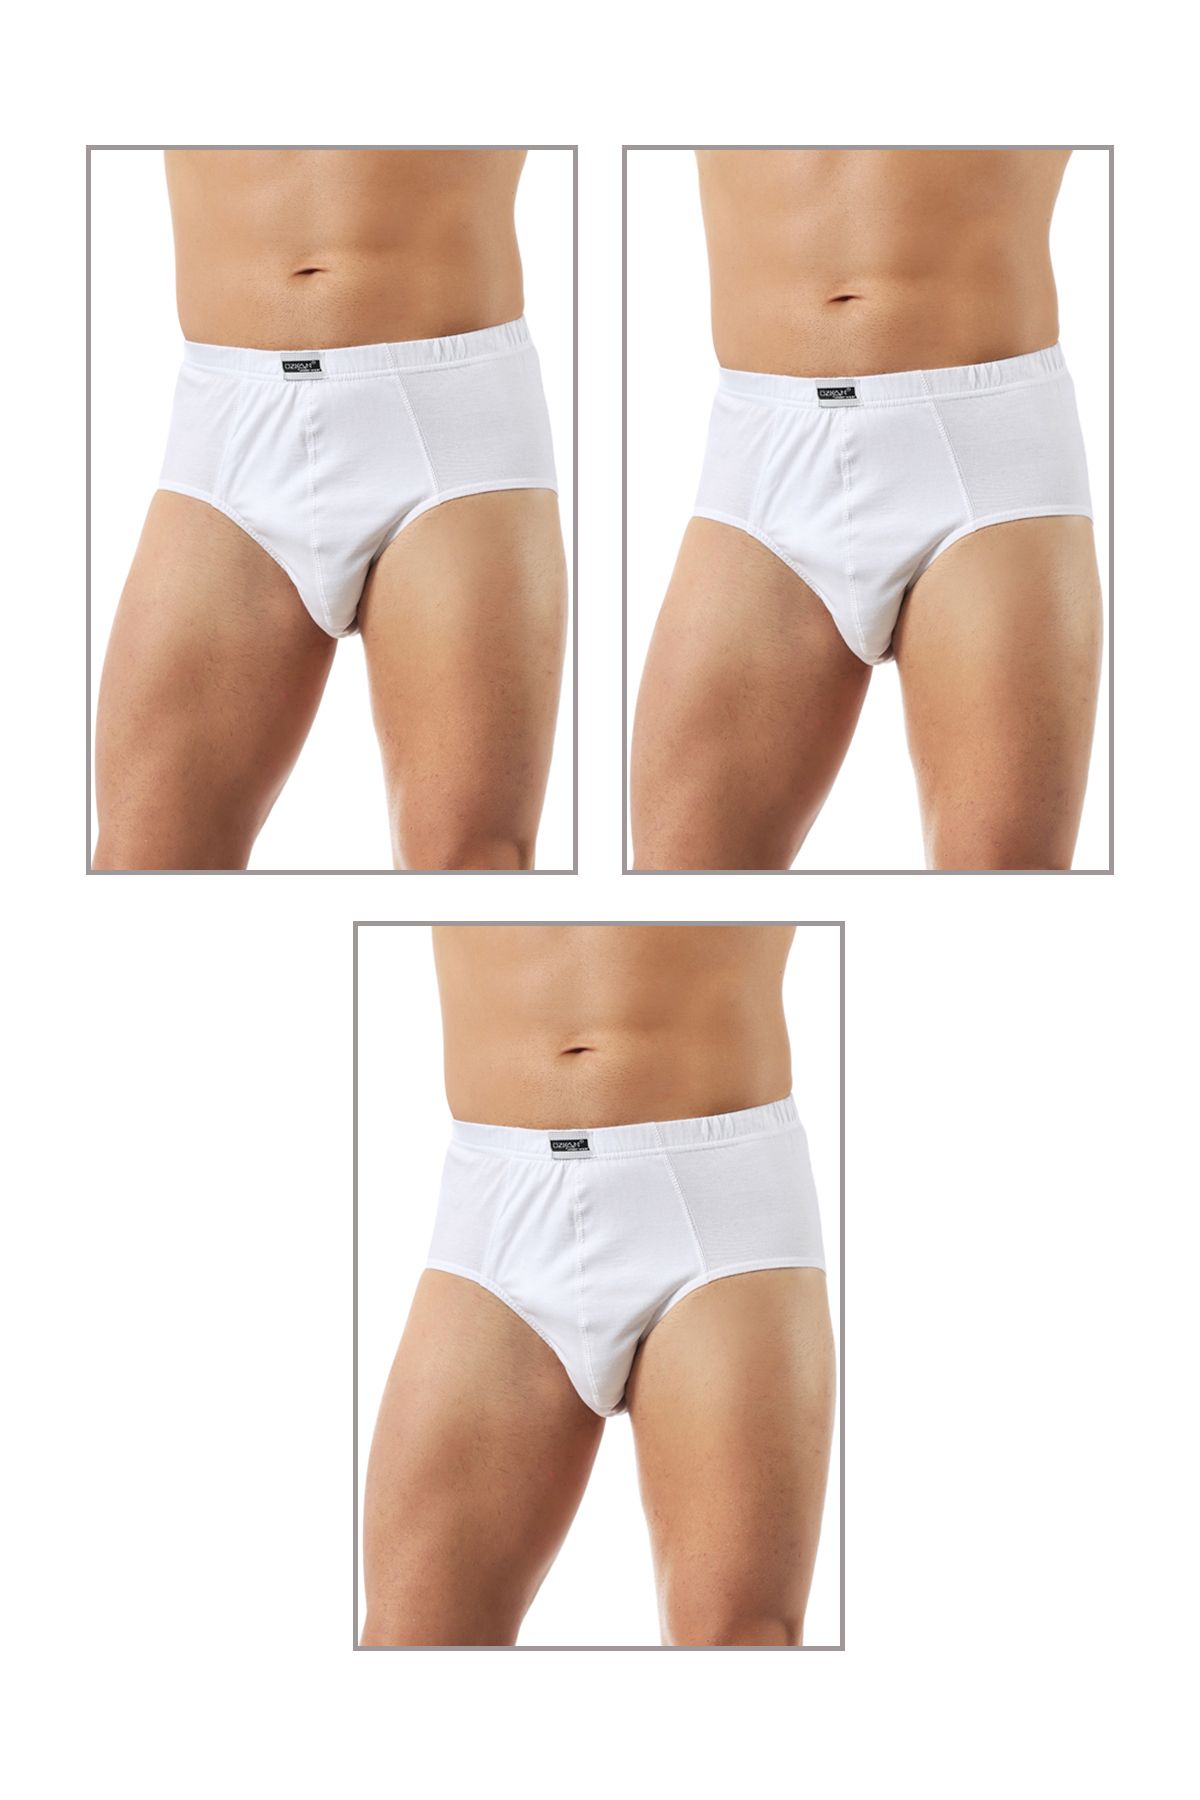 ÖZKAN underwear Özkan 0037 3'lü Paket Erkek Pamuklu Penye Süprem Esnek Rahat Slip Külot